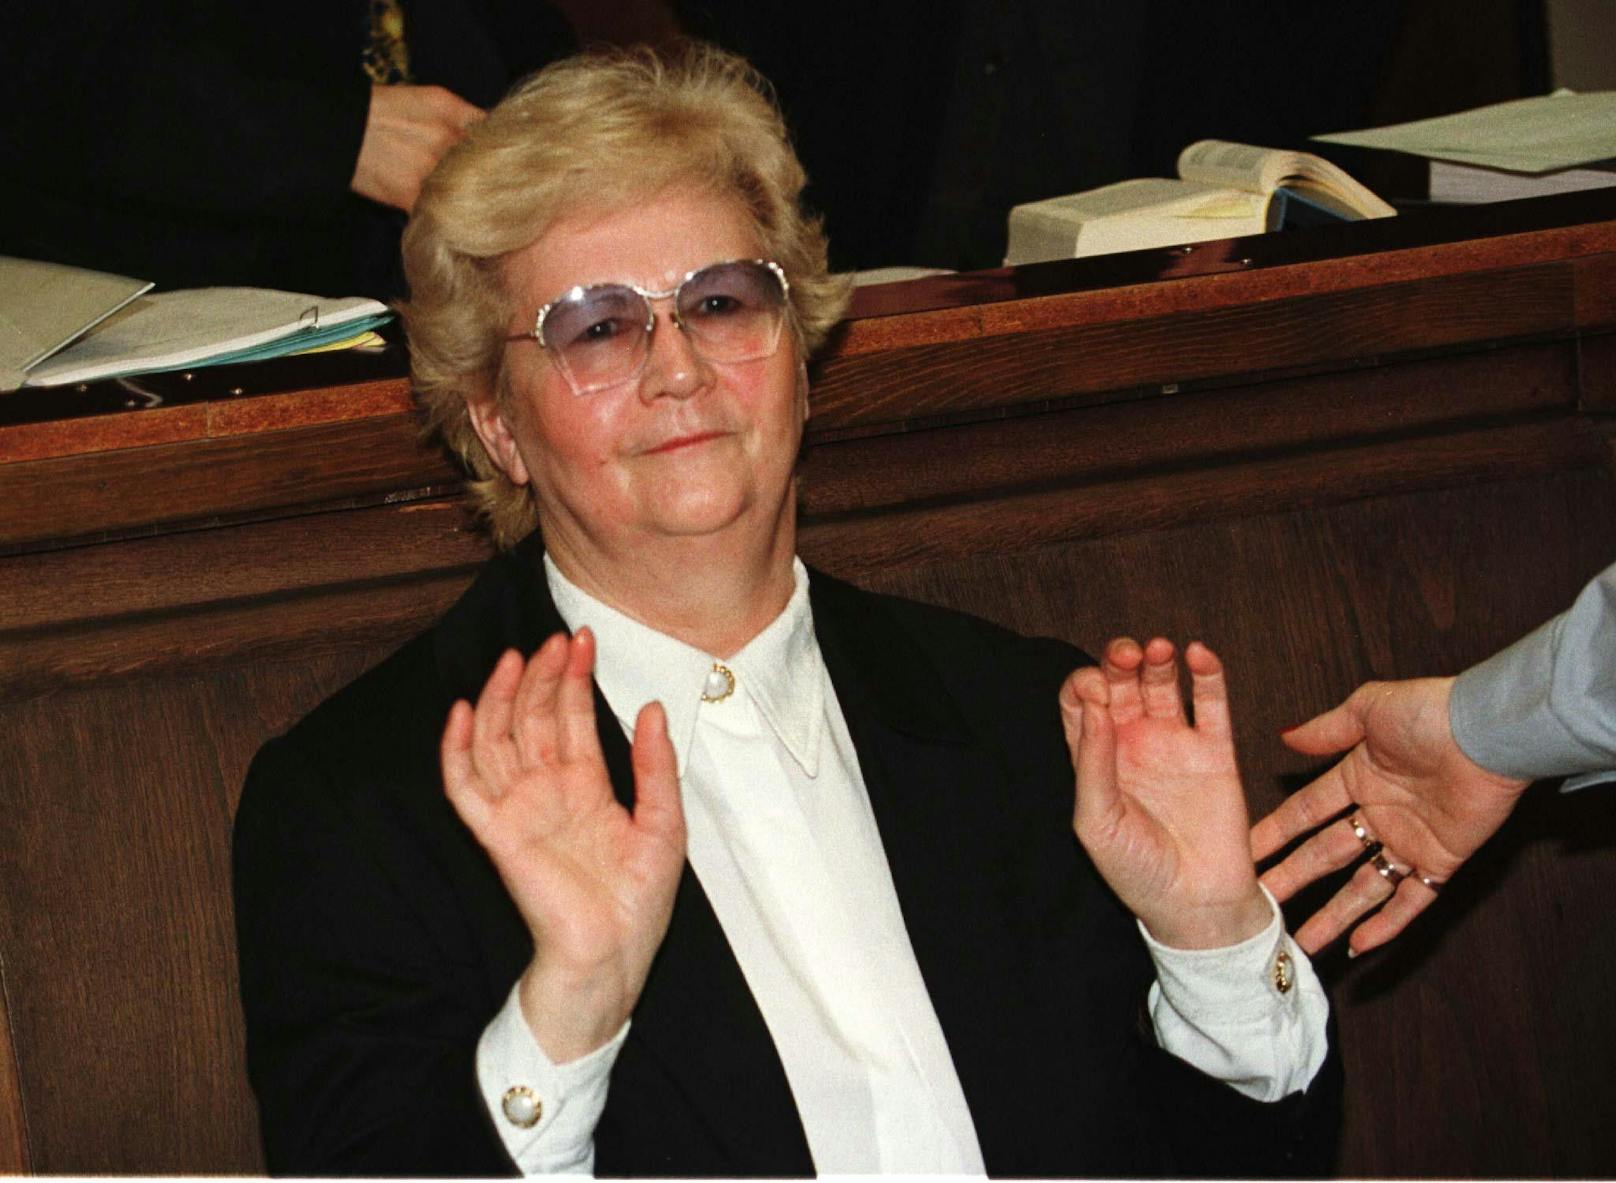 Elfriede Blauensteiner wurde als "Schwarze Witwe" bekannt. Sie wurde in drei Mordfällen schuldig gesprochen und mehrfach lebenslänglich verurteilt. 2003 verstarb sie mit 72 Jahren.